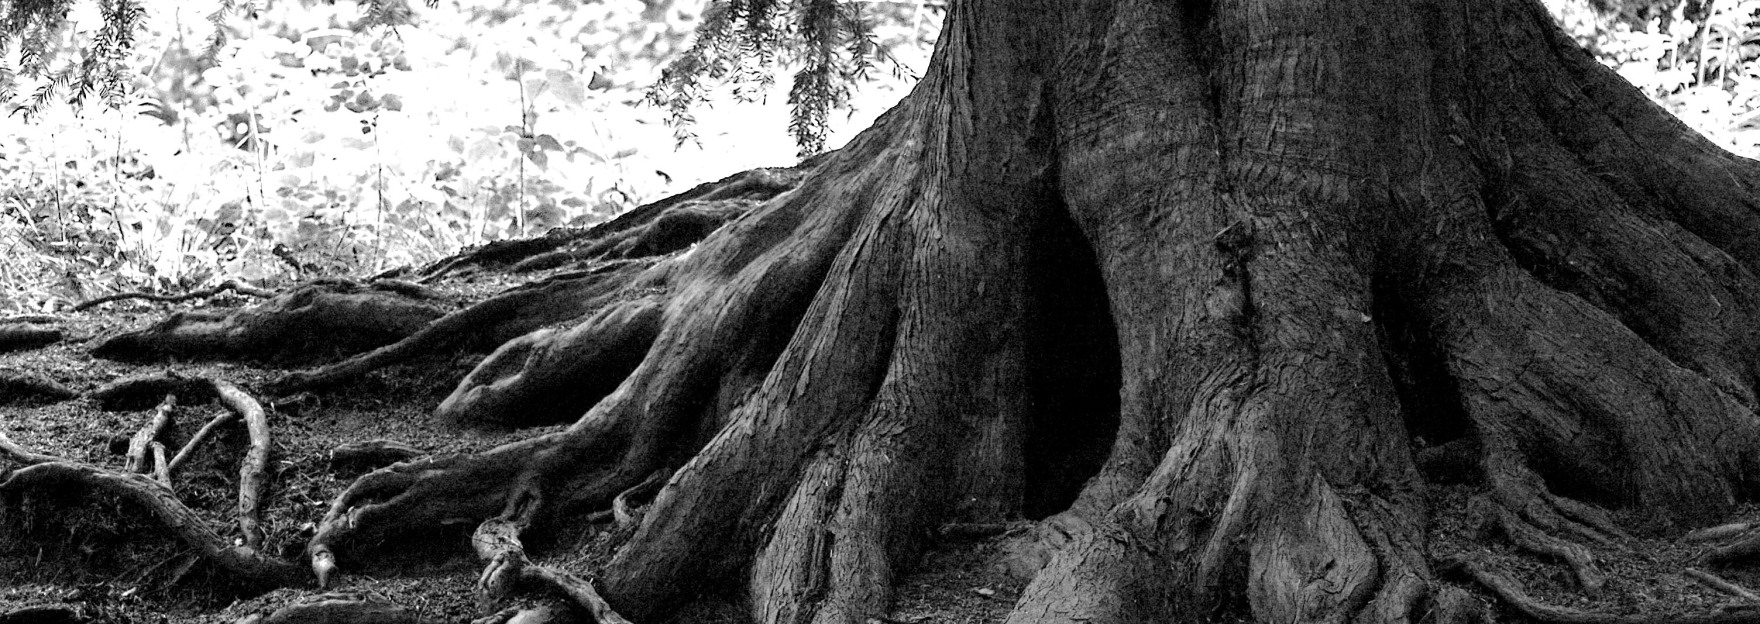 Огромный корень дерева. Японский дуб мидзунара. Деревья. Ствол дерева. Дерево с большими корнями.